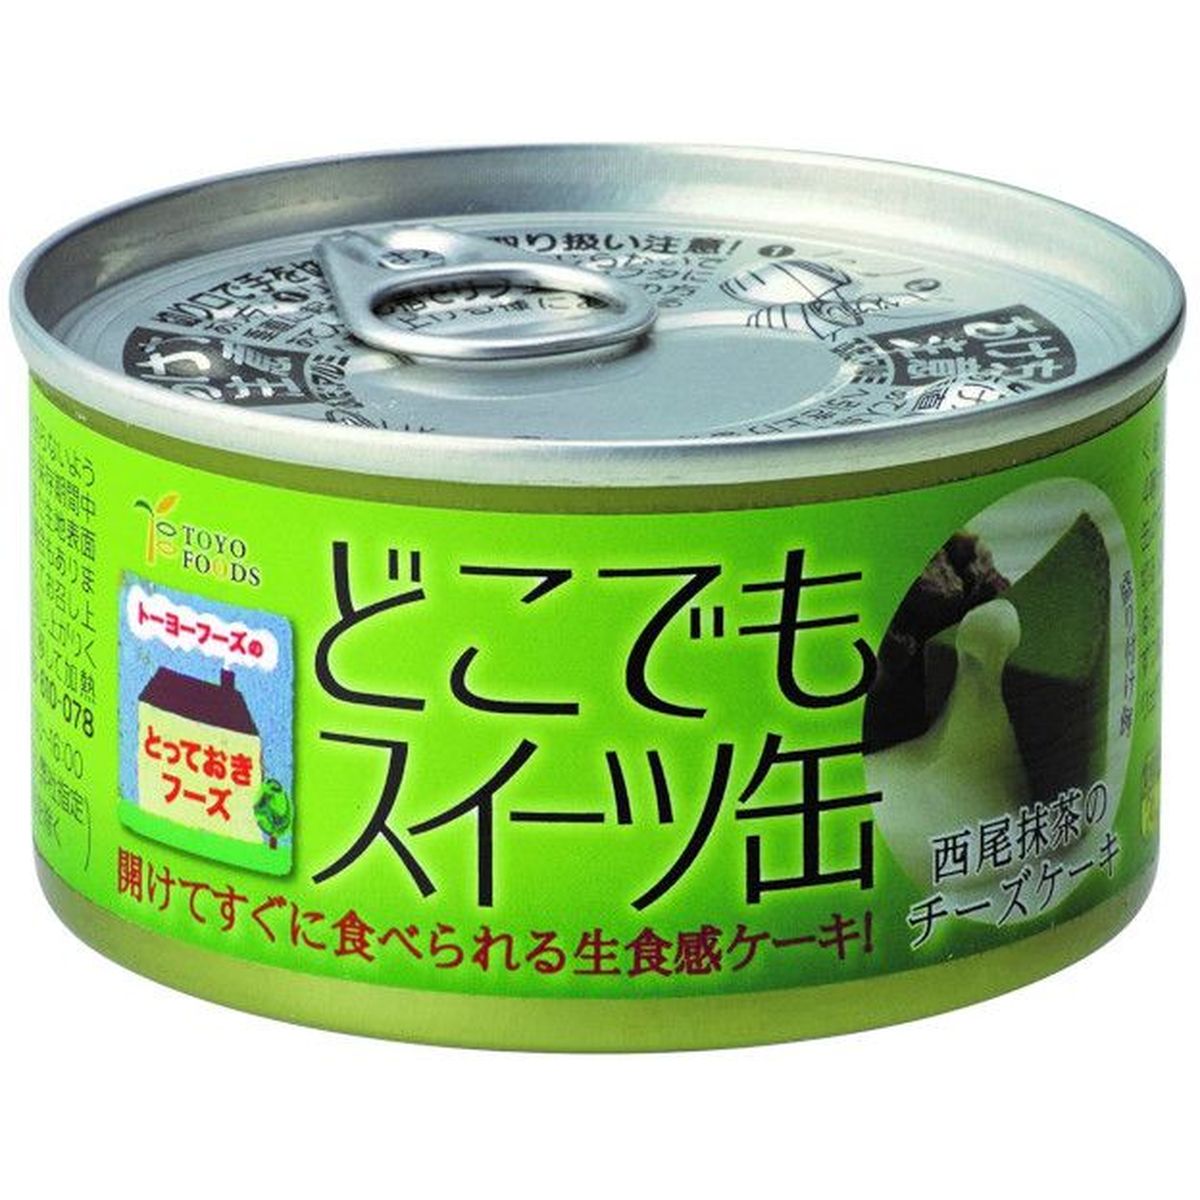 【24個入リ】トーヨーフーズ ドコデモスイーツ缶 西尾抹茶 150g